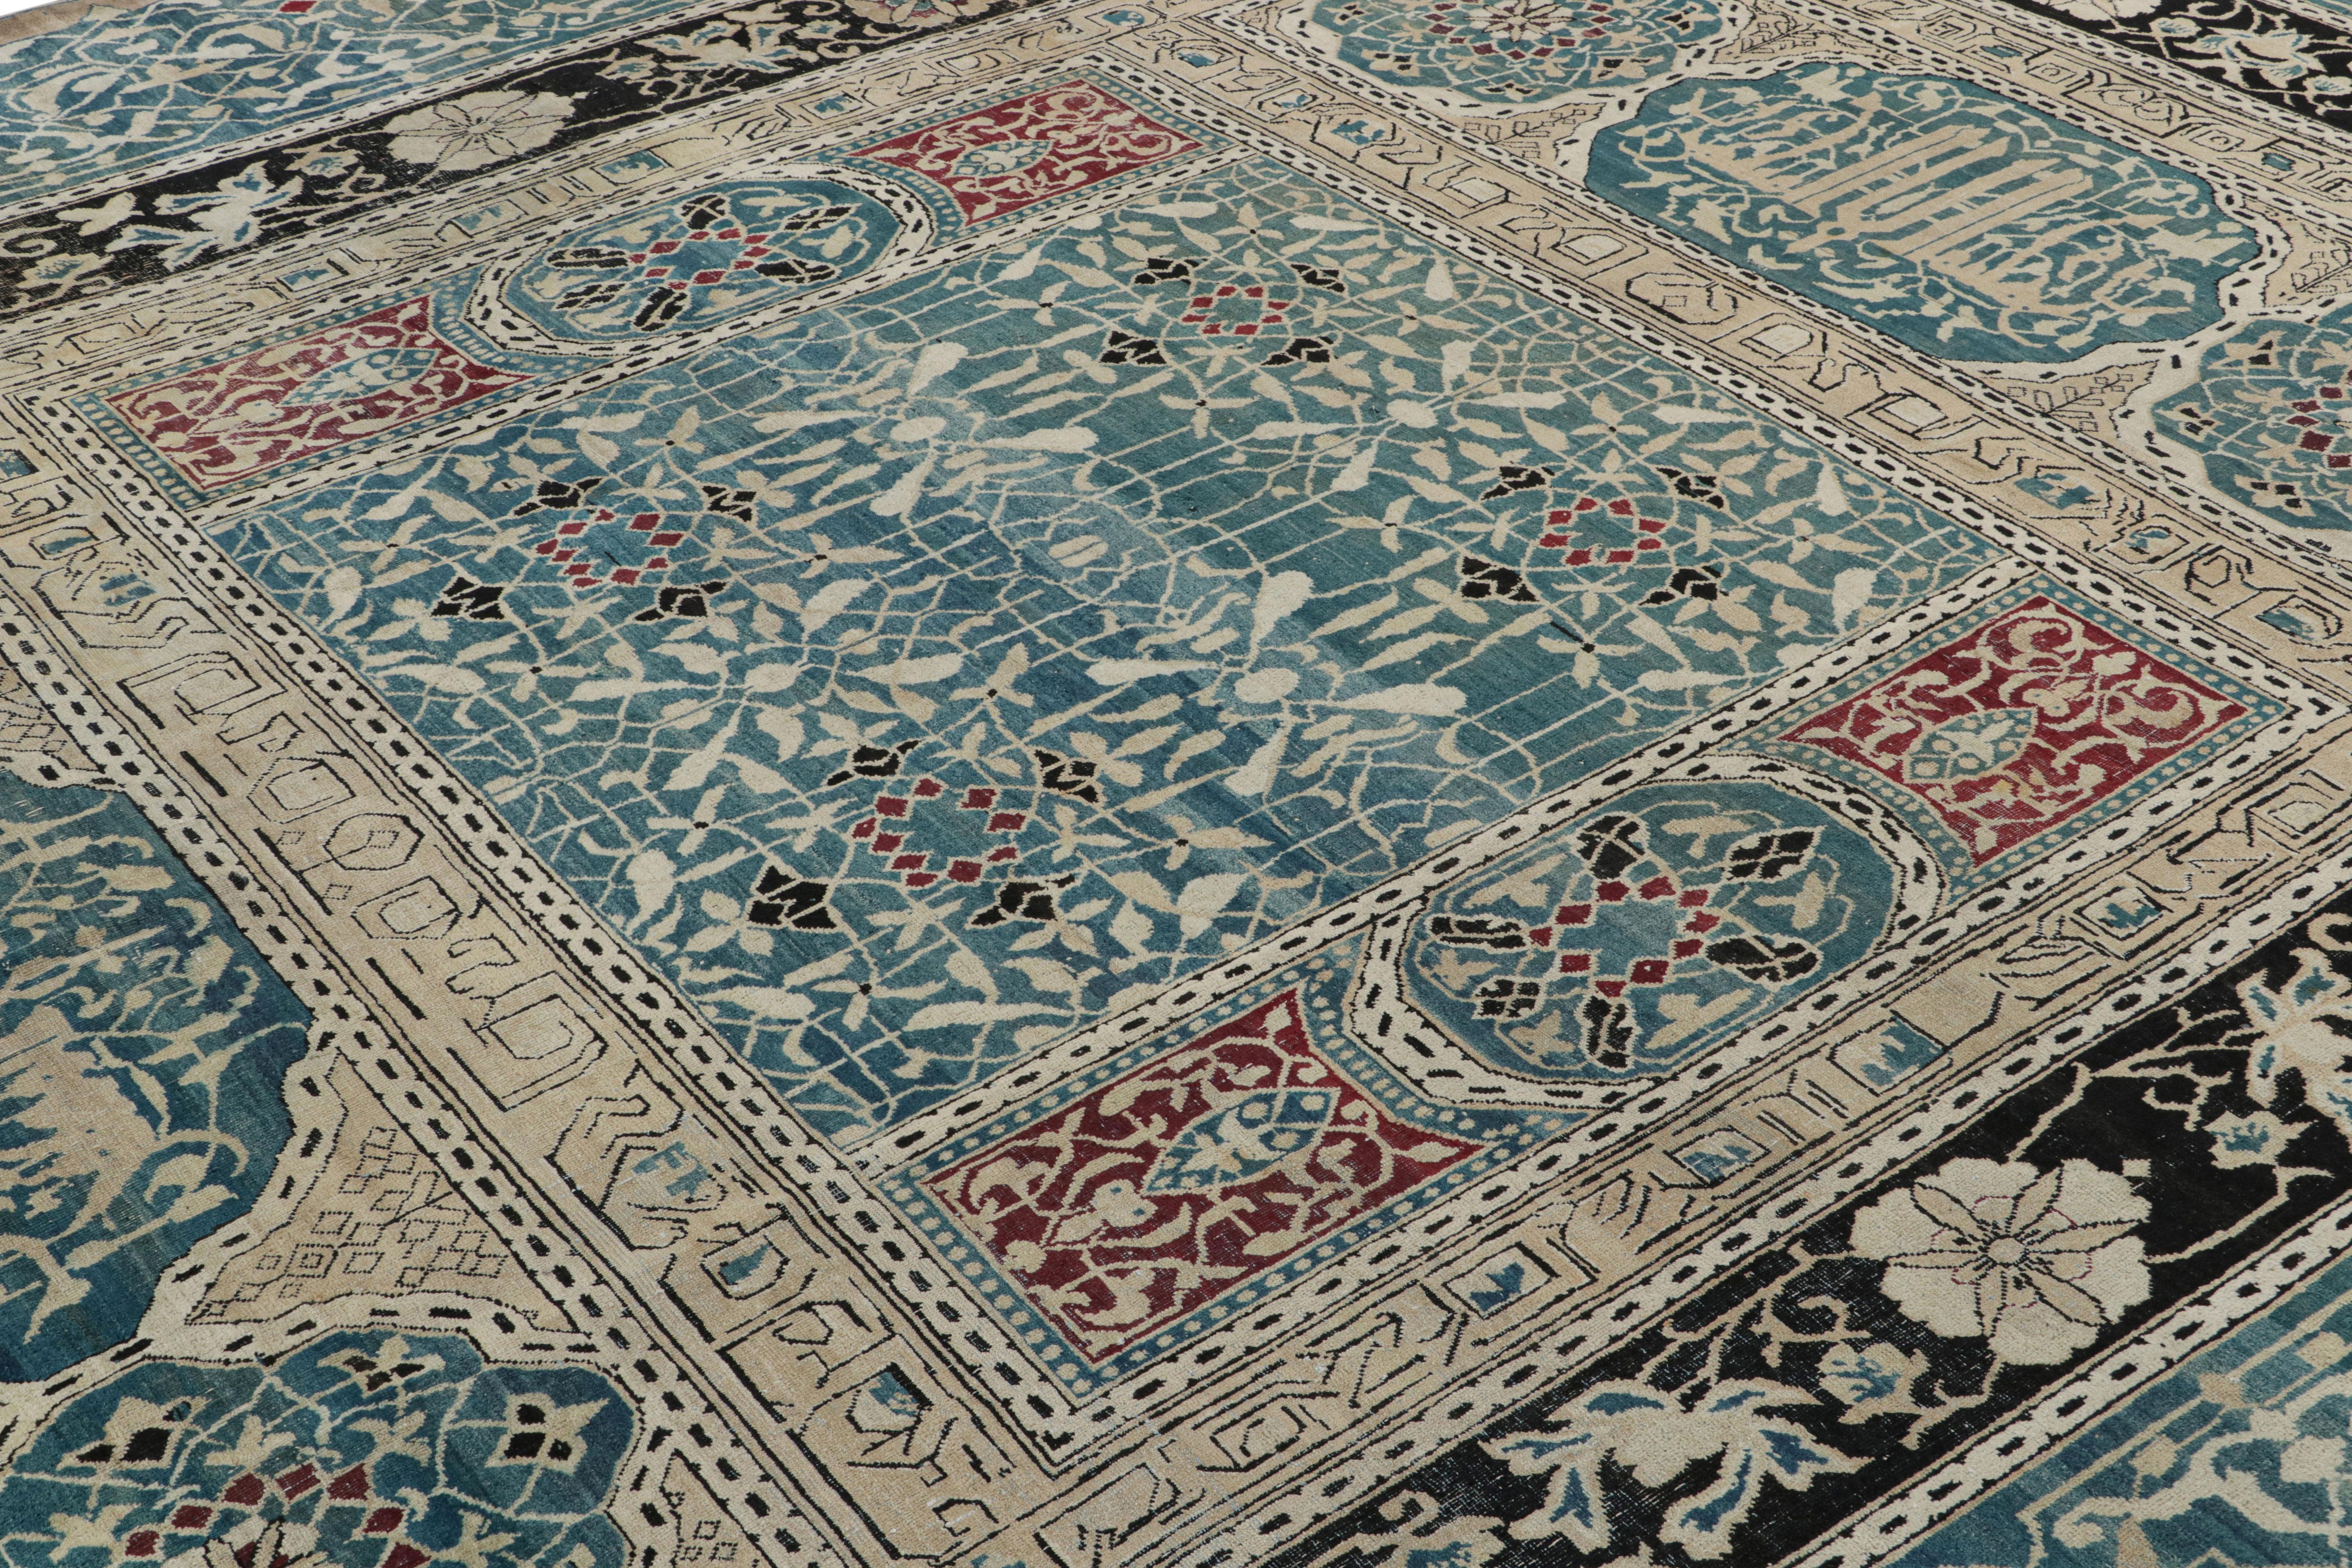 Dieser 10x13 große antike Agra-Teppich ist eine äußerst seltene und aufregende Ergänzung unserer Sammlung indischer Teppiche - handgeknüpft aus Wolle und vermutlich aus der zweiten Hälfte des 19. Jahrhunderts stammend. 

Über das Design: